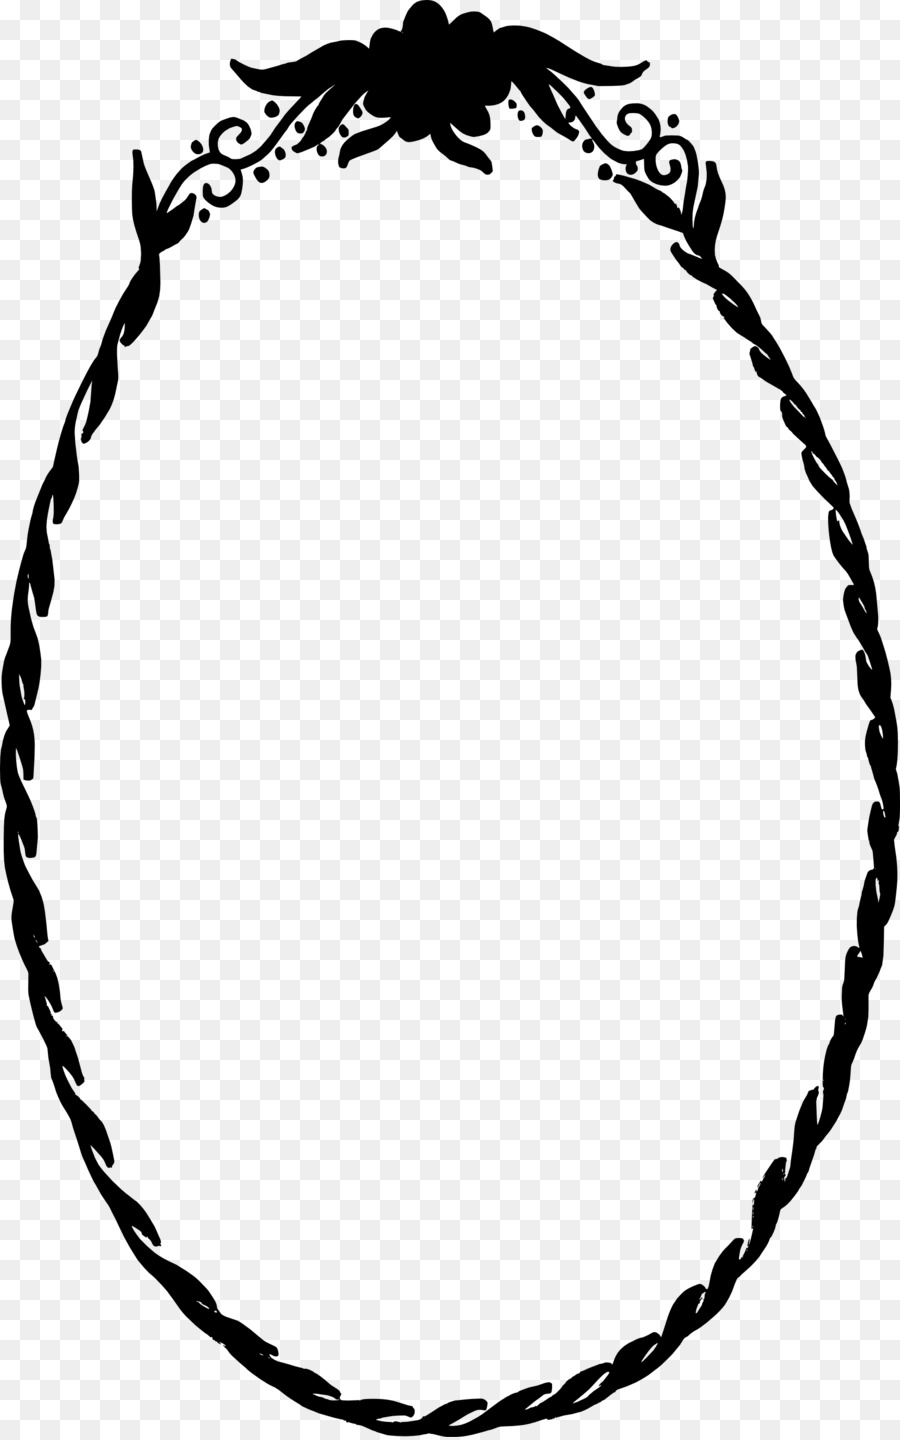 clip art - cornice ovale